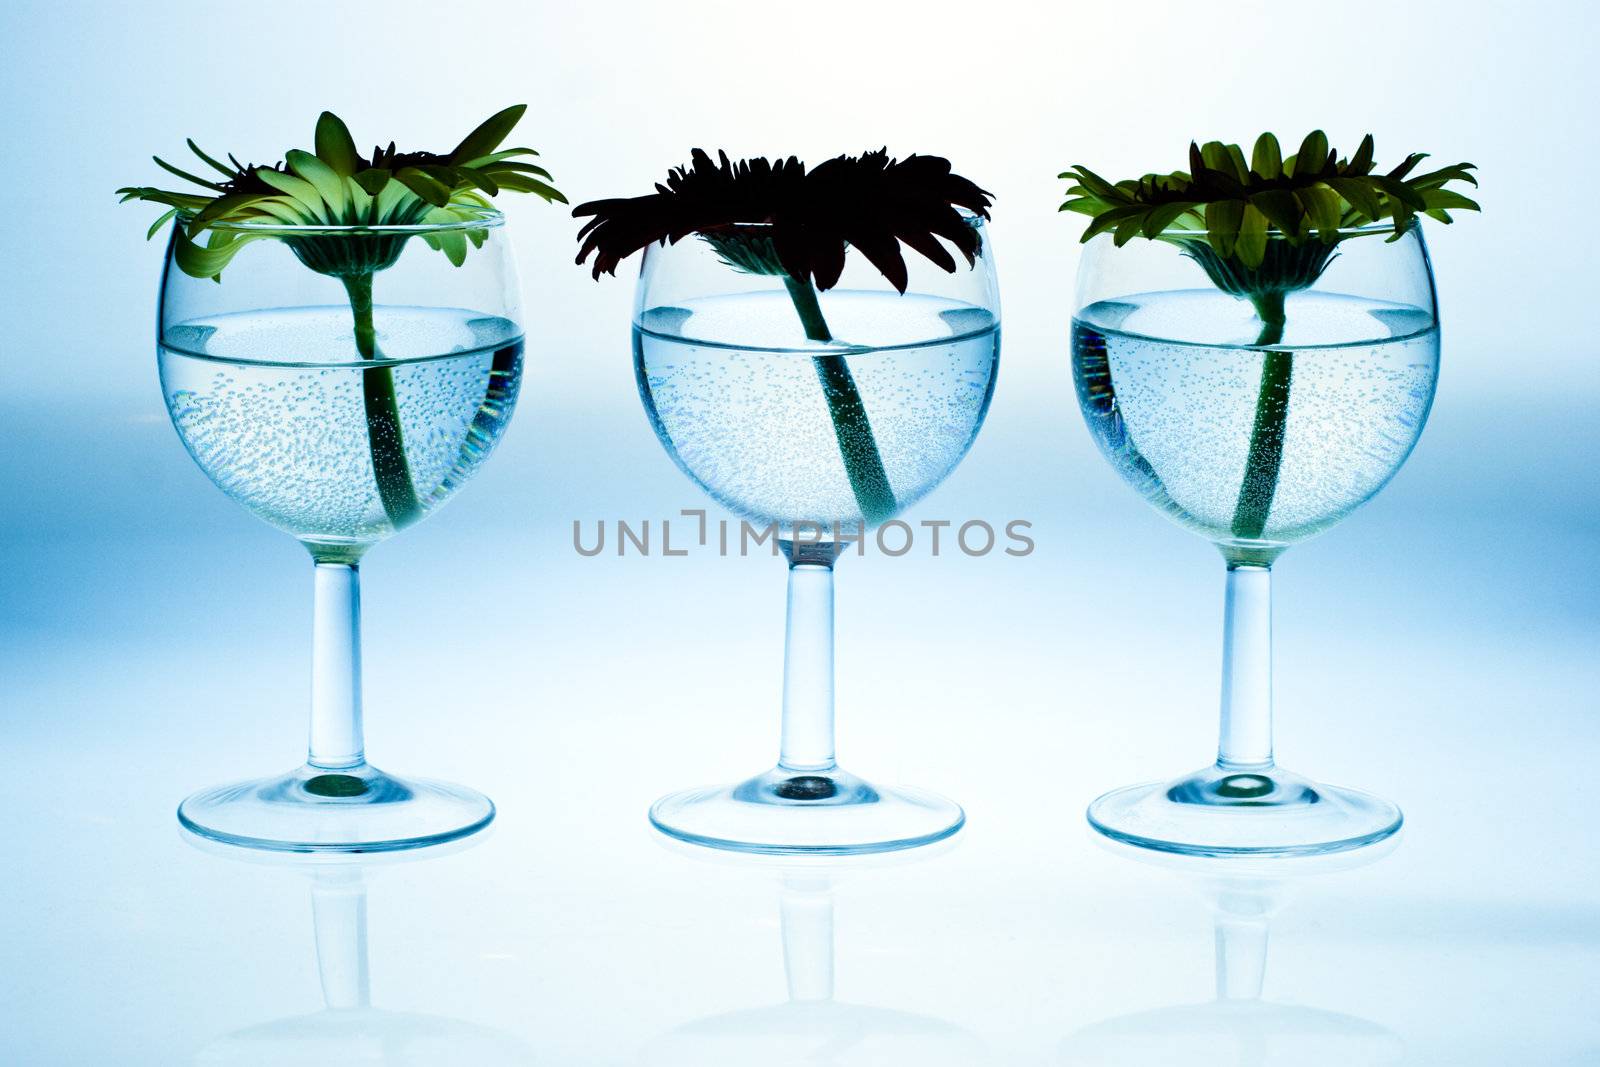 Gerberas in wine glasses by naumoid